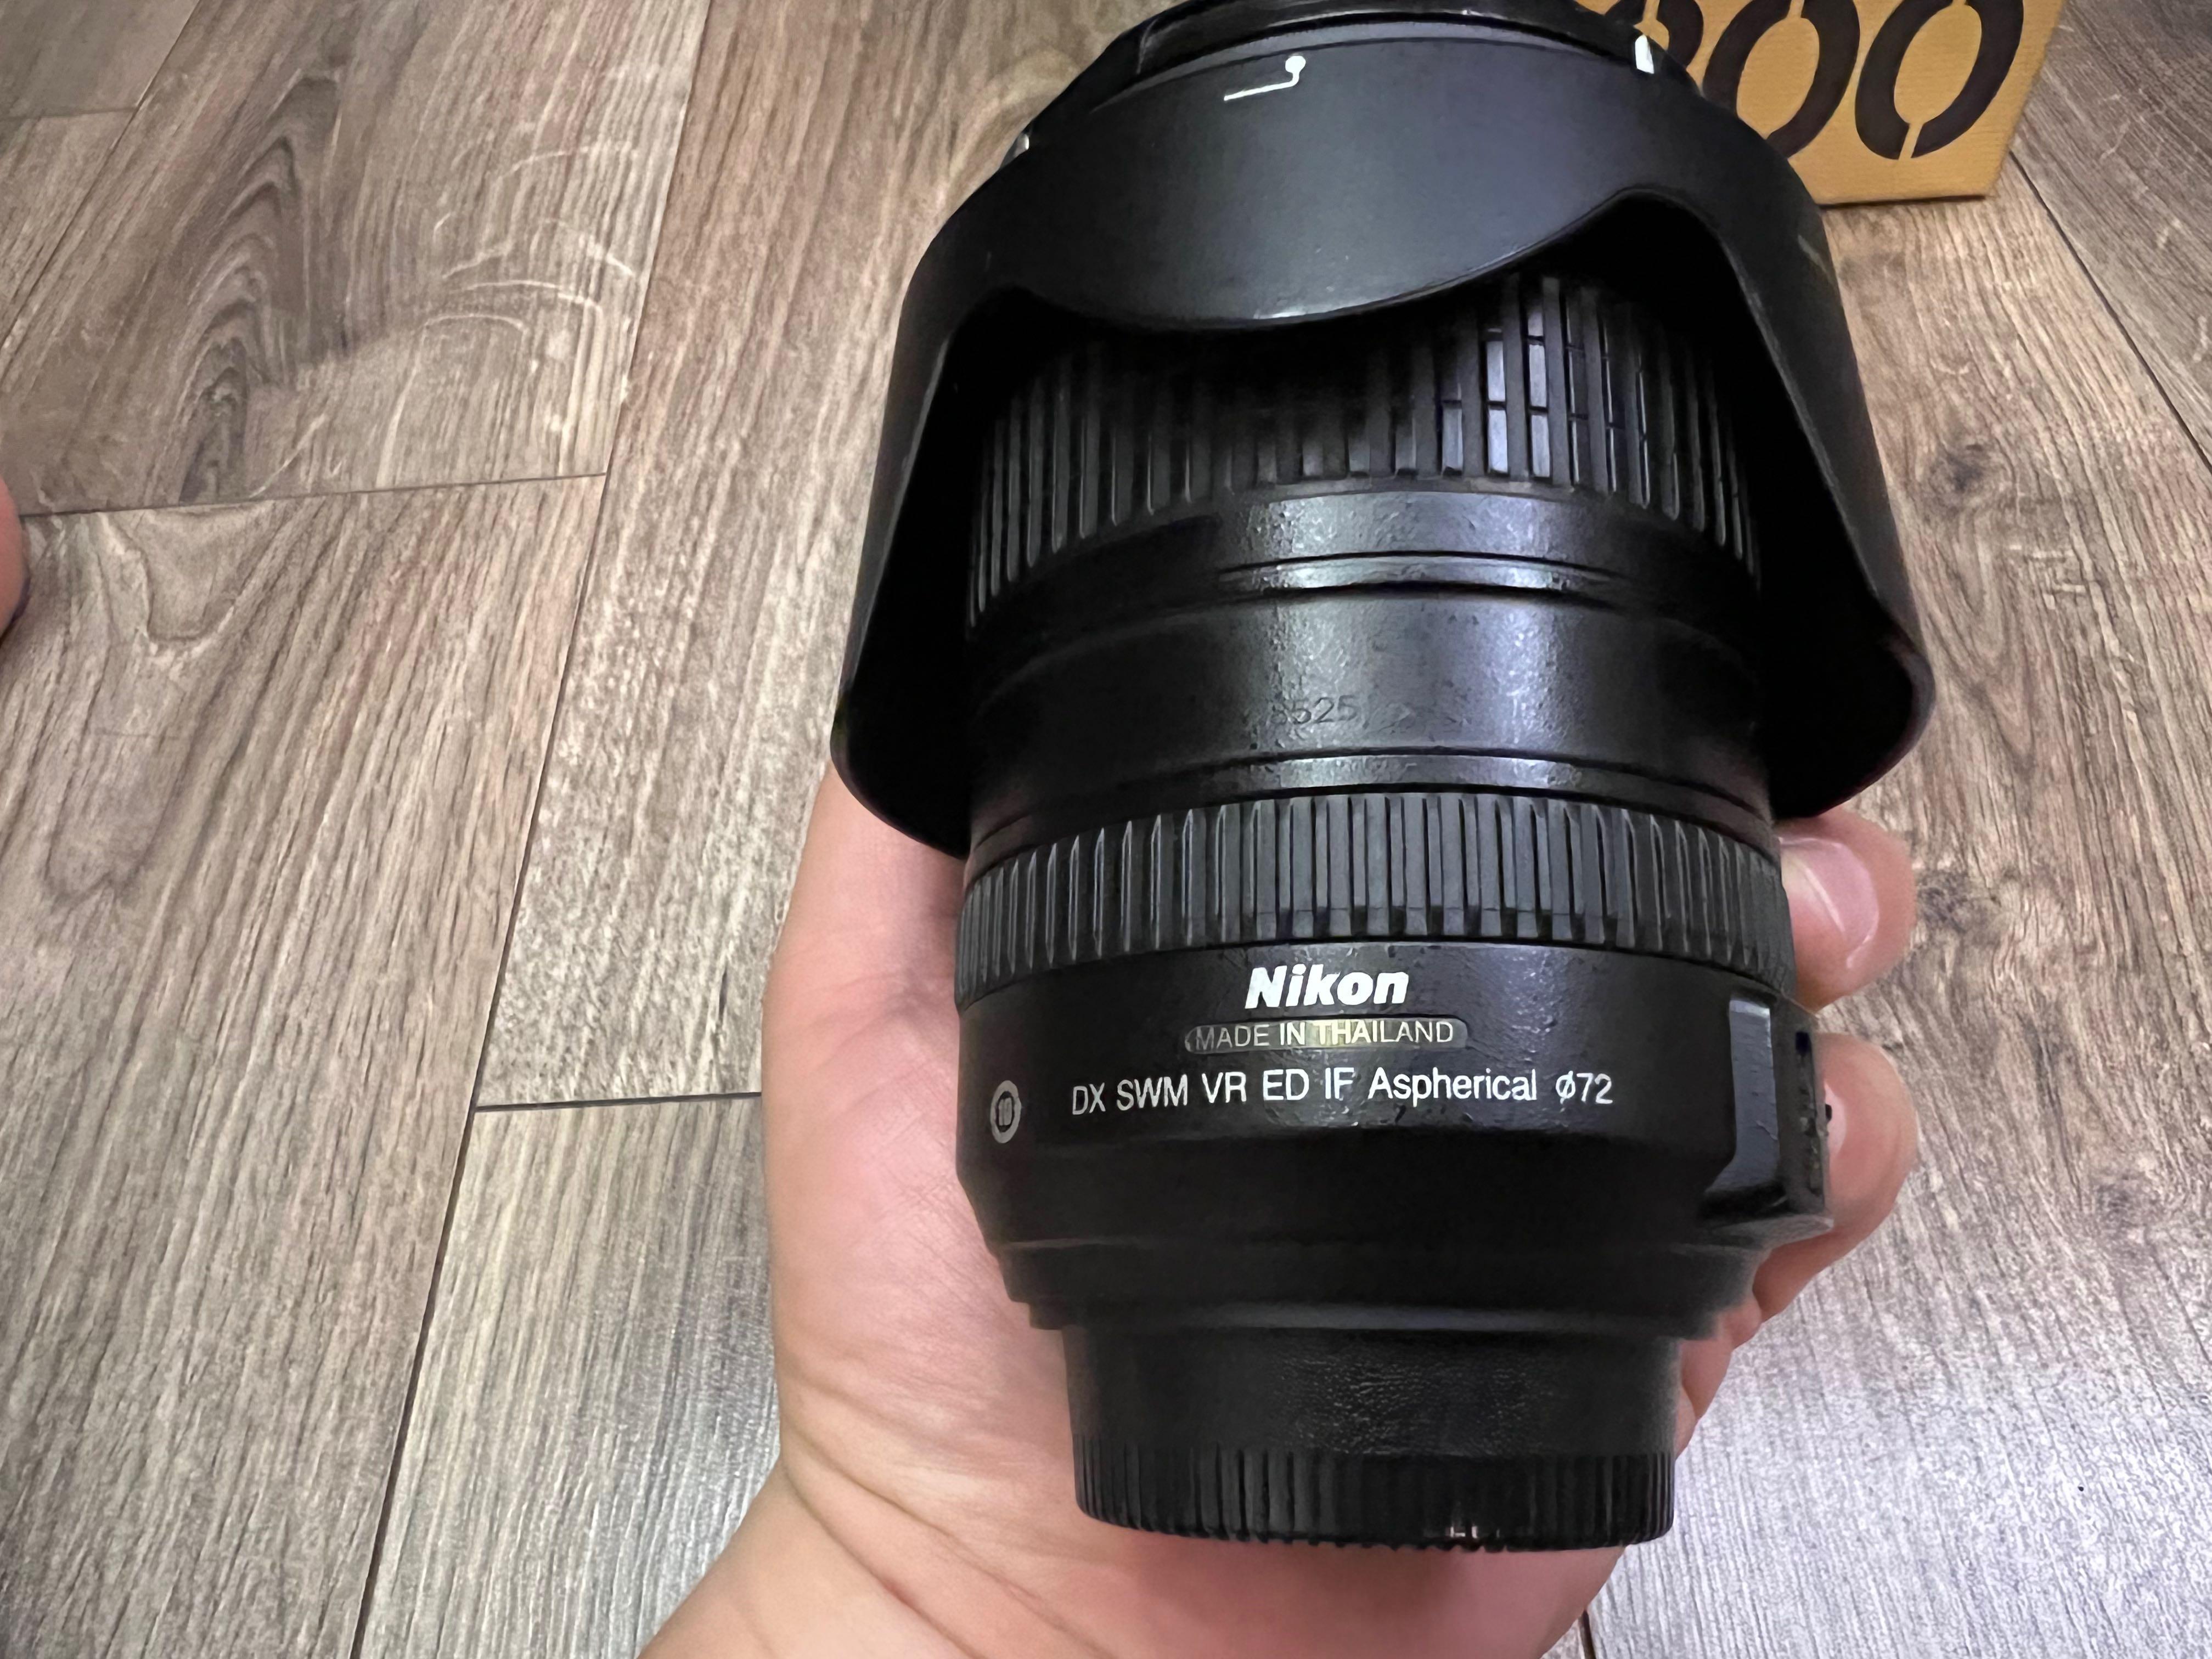 Nikon AF-S Nikkor 18-200 mm VR F3.5-5.6G ED 旅遊鏡頭, 相機攝影